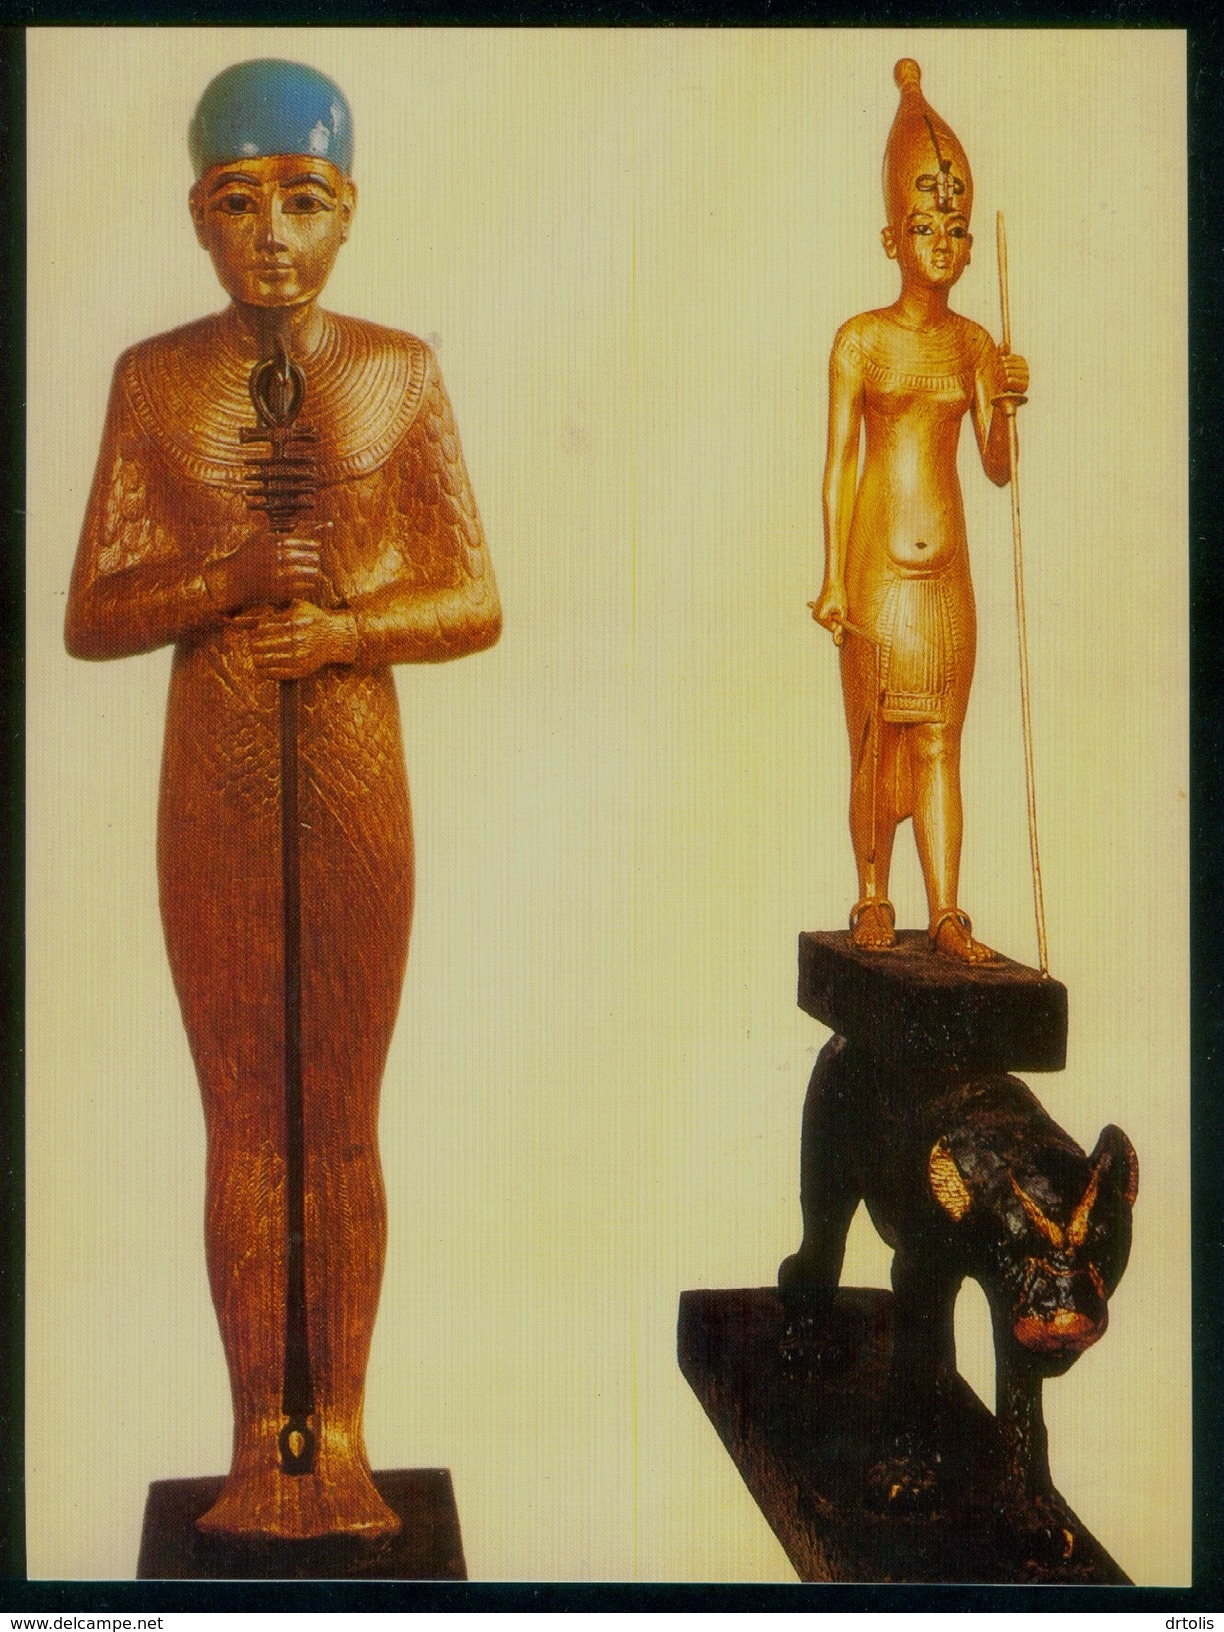 EGYPT / EGYPTOLOGY / EGYPTIAN MUSEUM / TUTANKHAMUN'S TREASURES / PTAH / THE KING OF UPPER EGYPT - Museen